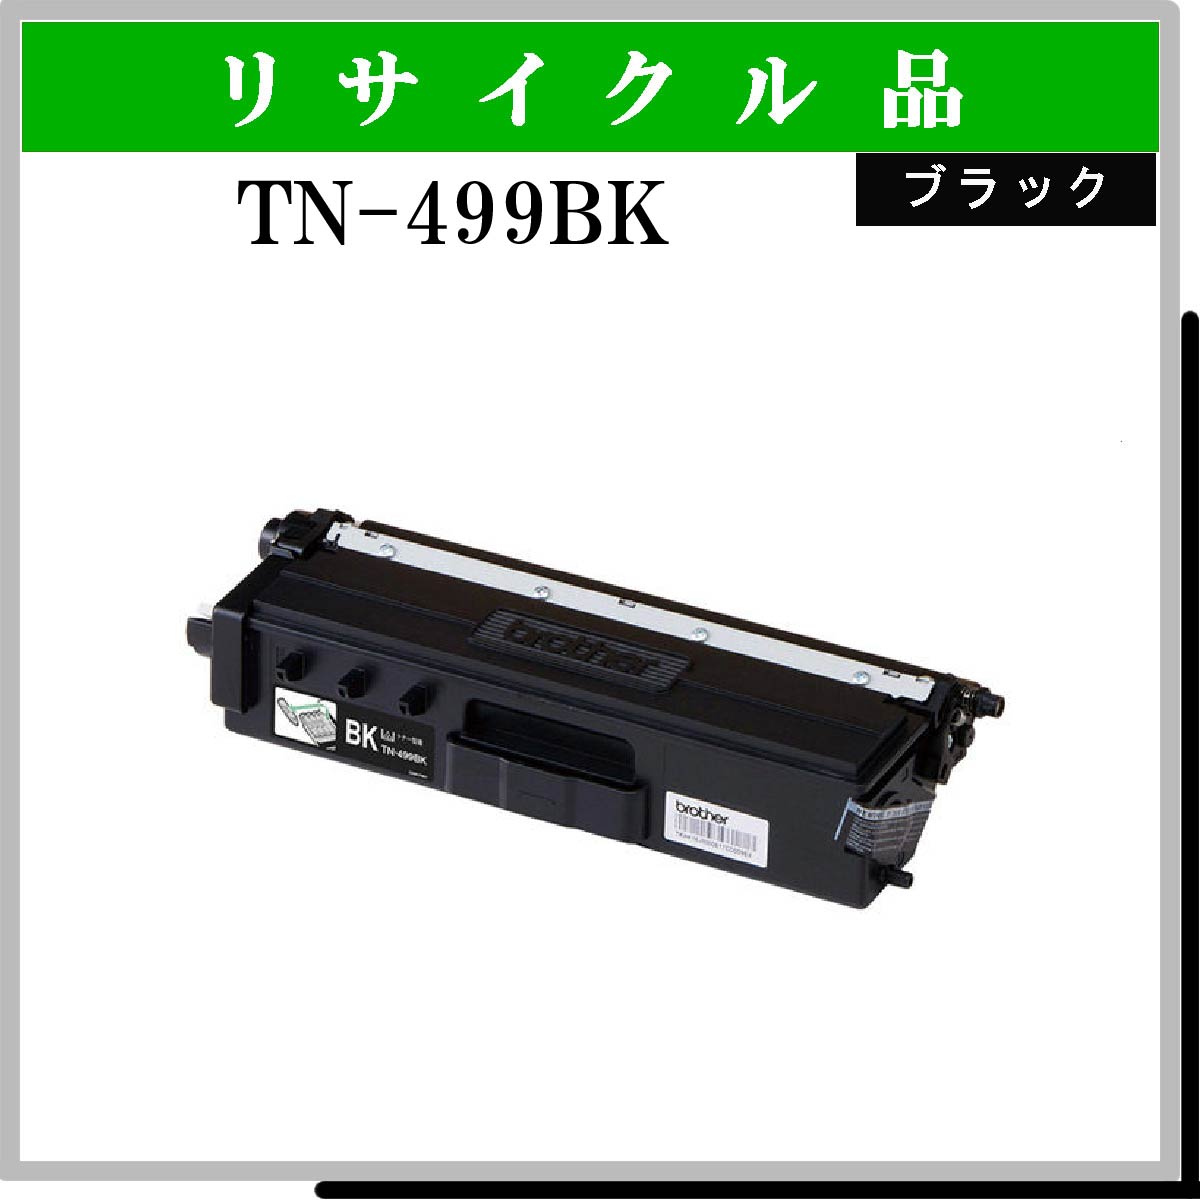 TN-499BK